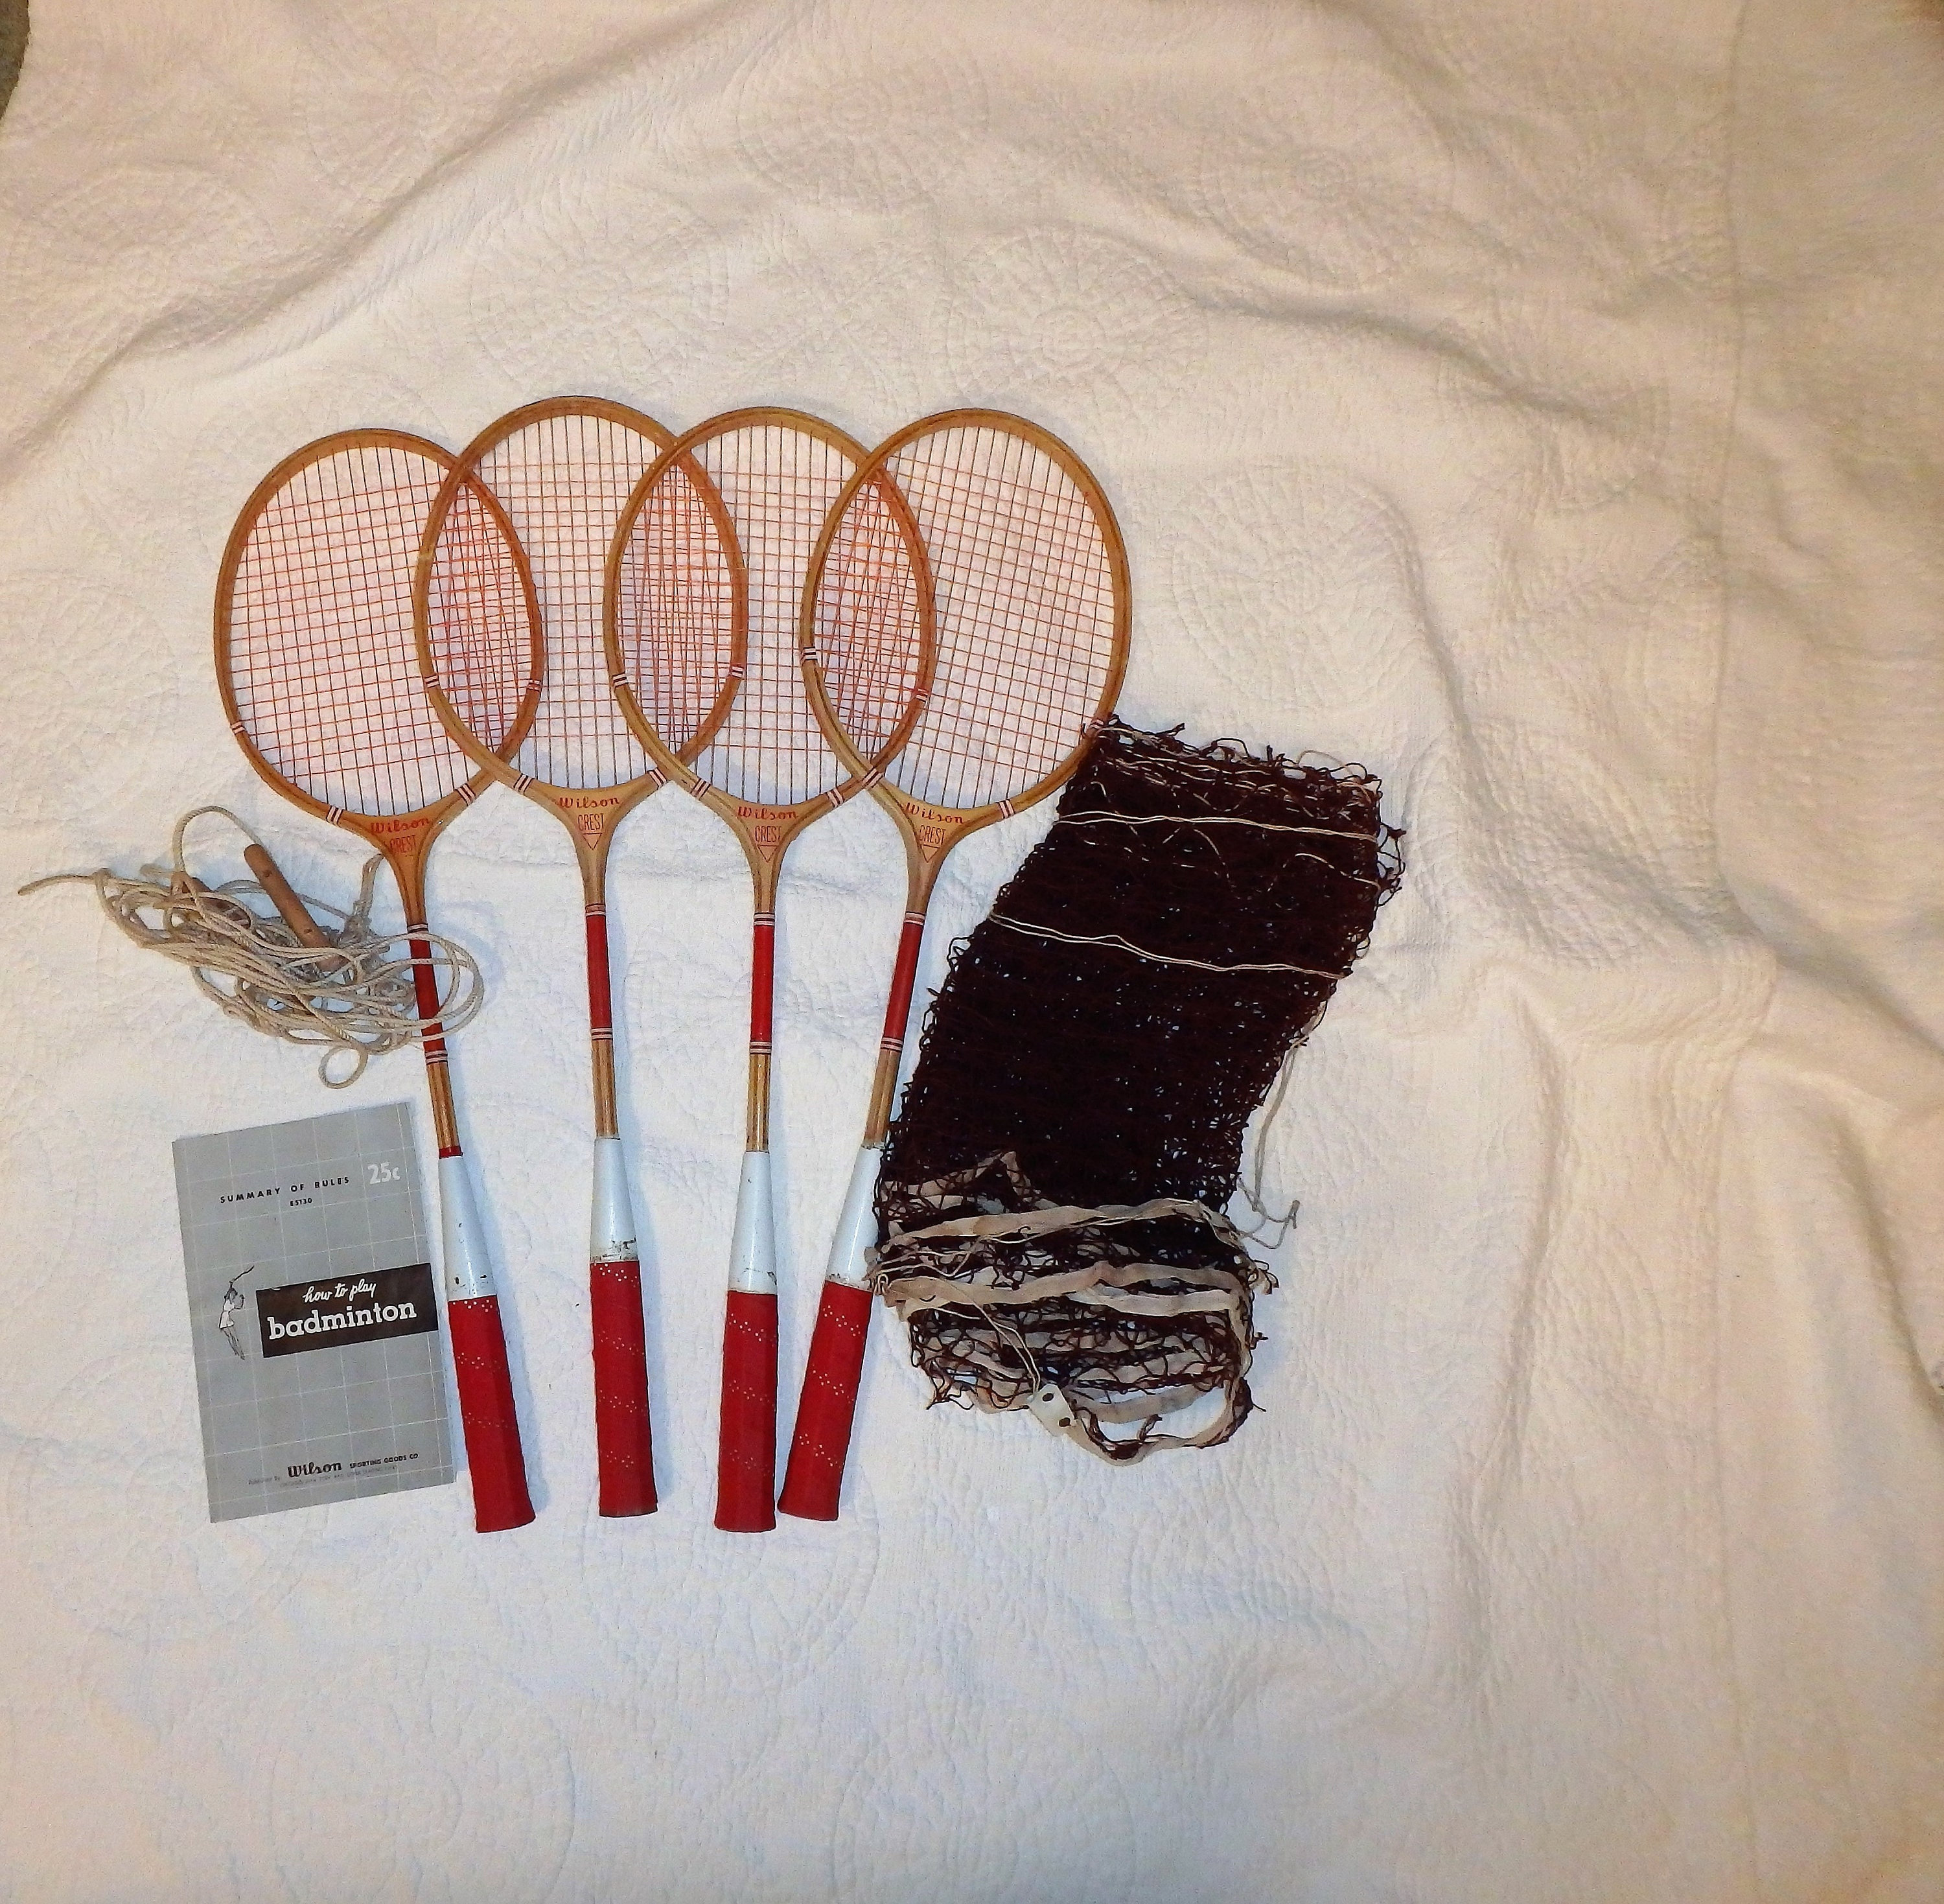 Wilson Crest Badminton Rackets and Net